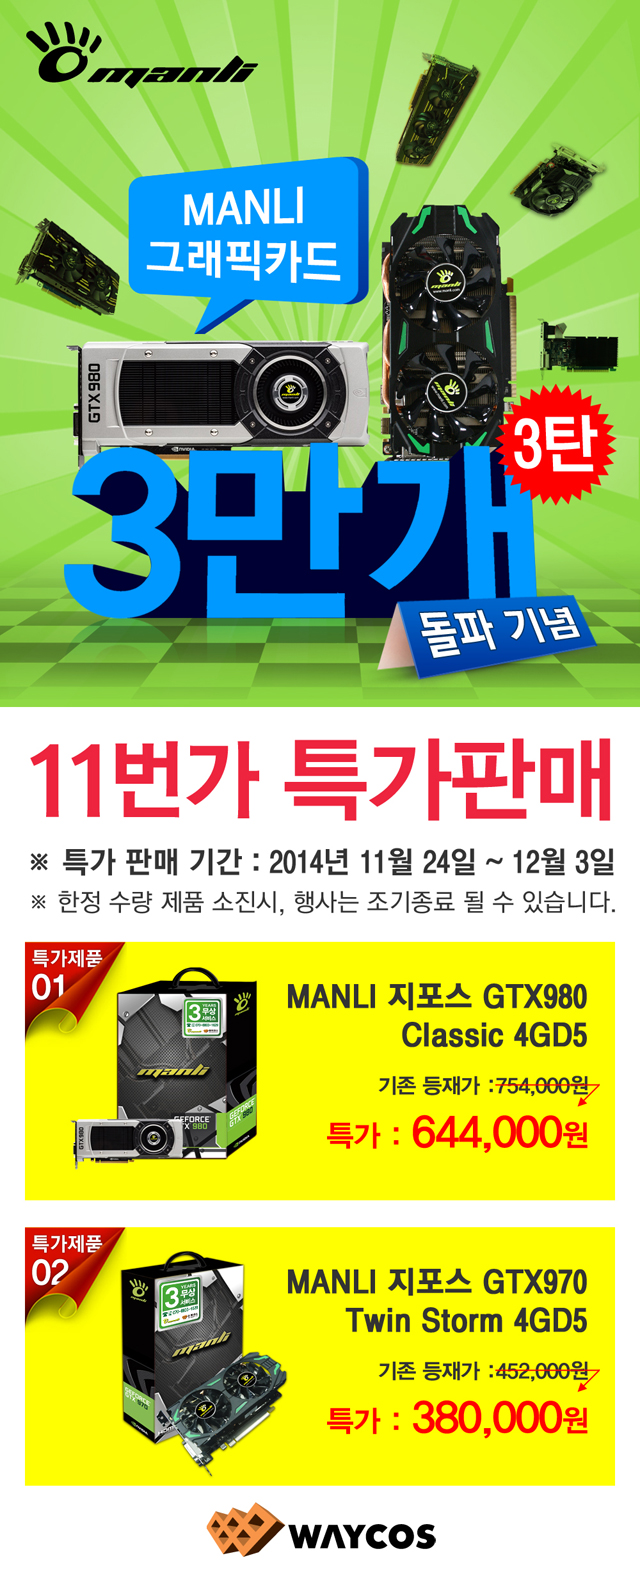 웨이코스, MANLI 그래픽카드 3만개 판매 돌파 기념 “11번가 3차 특가판매” 진행